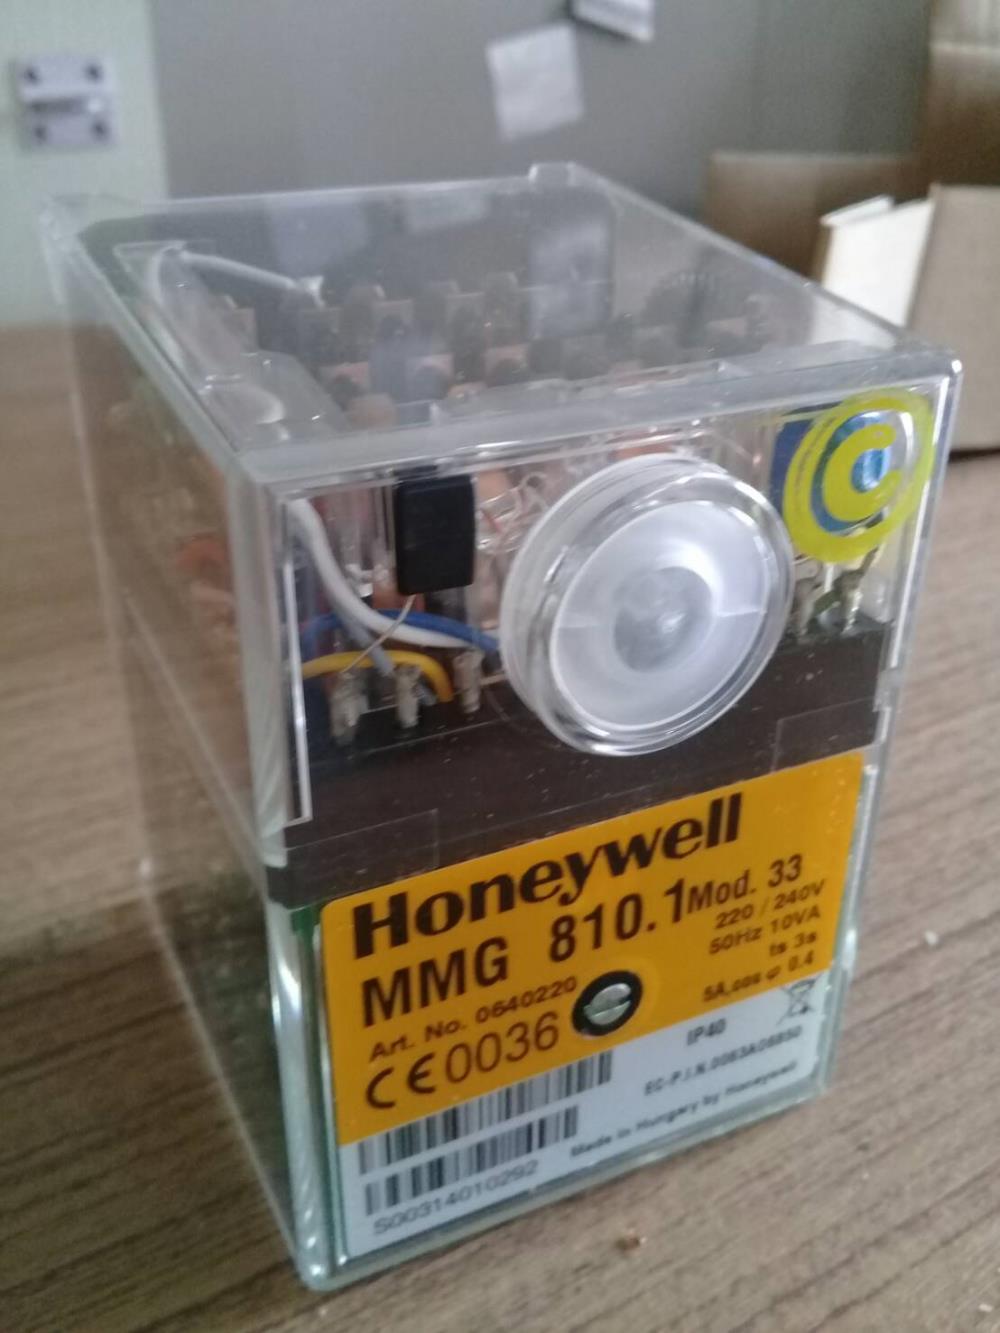 Honeywell Control Box MMG 810.1,Honeywell ,Control Box ,MMG 810.1,Honeywell,Instruments and Controls/Controllers